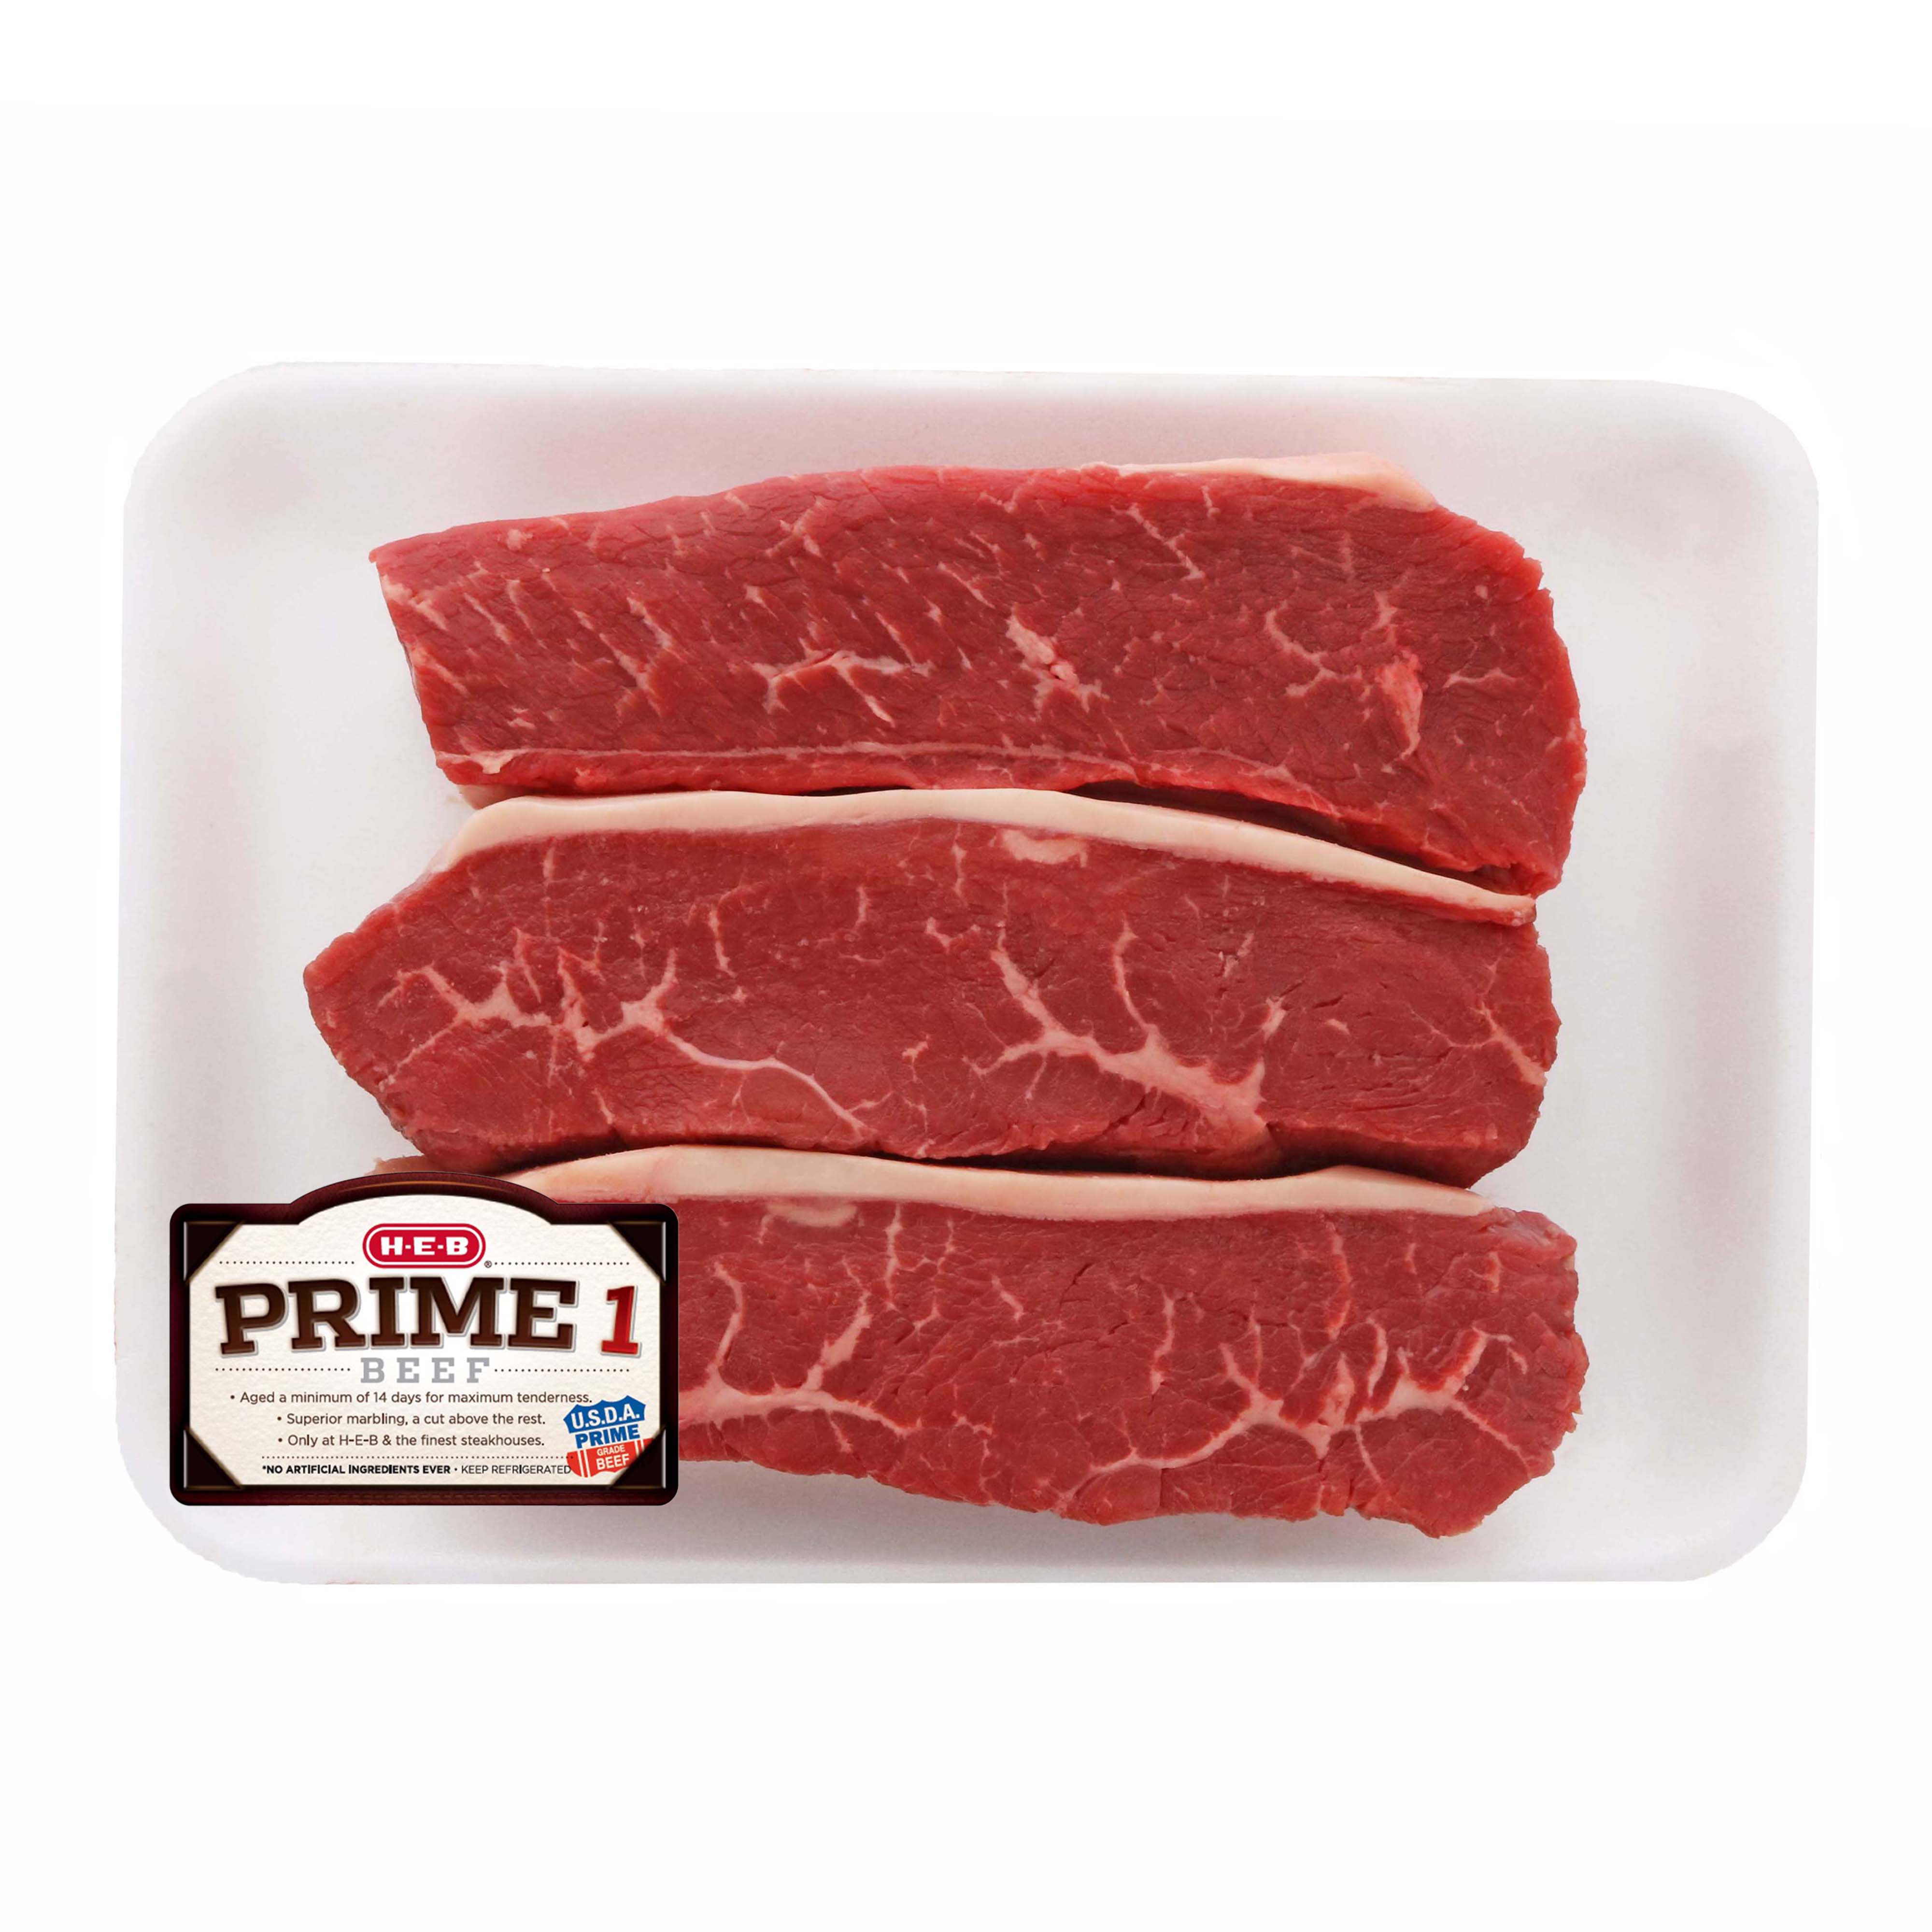 H-E-B Prime 1 Beef Petite Sirloin Steak Thick, USDA Prime - Shop